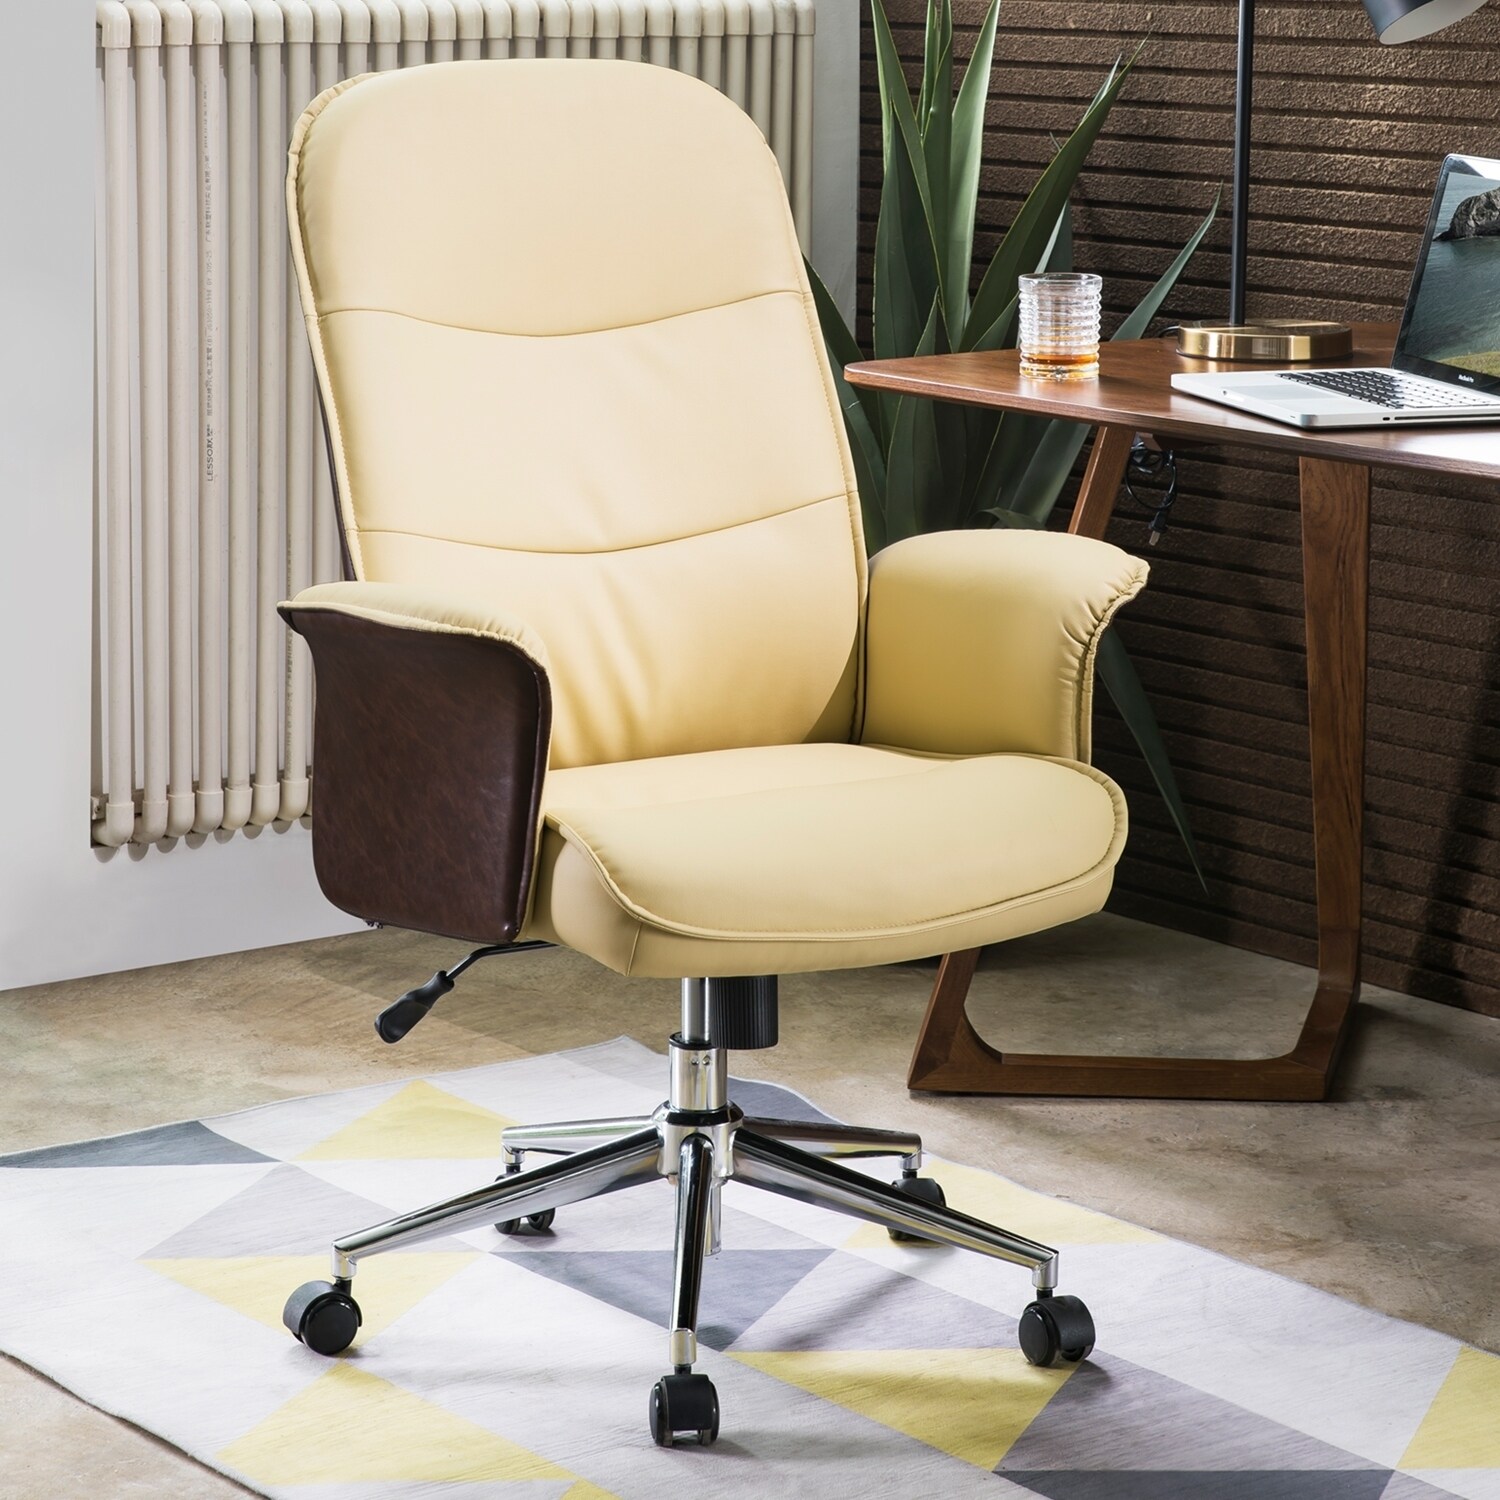 Shop Ovios Ergonomic Office Chair Modern Computer Desk Chair High